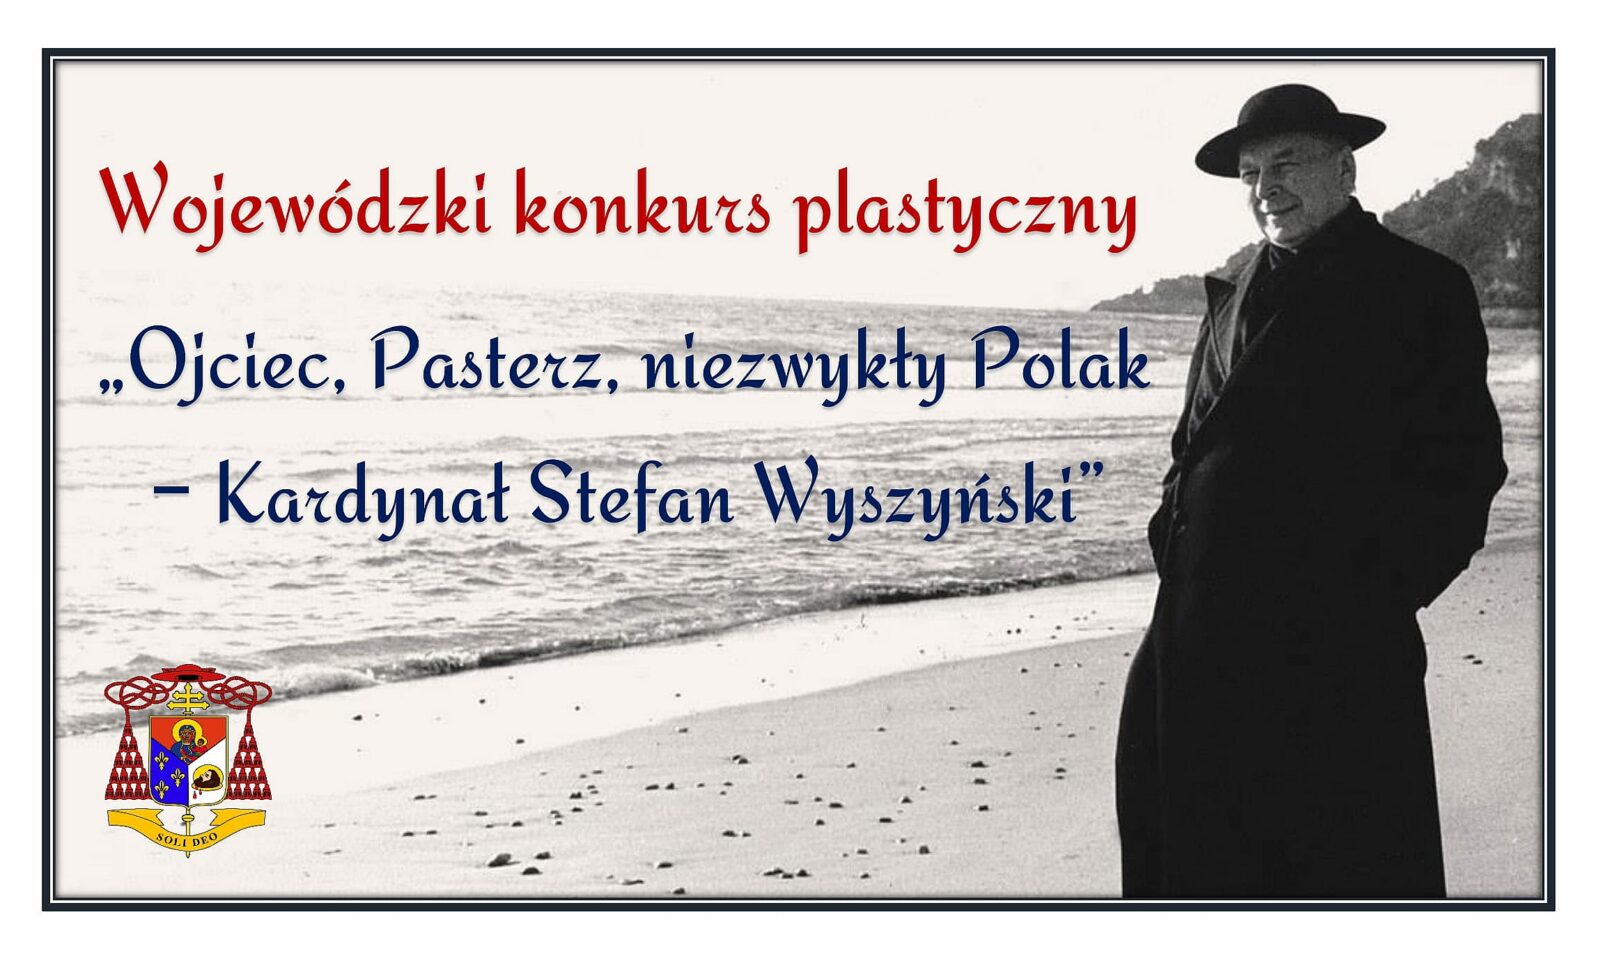  Wojewódzki konkurs plastyczny: „Ojciec, Pasterz, niezwykły Polak - Kardynał Stefan Wyszyński”